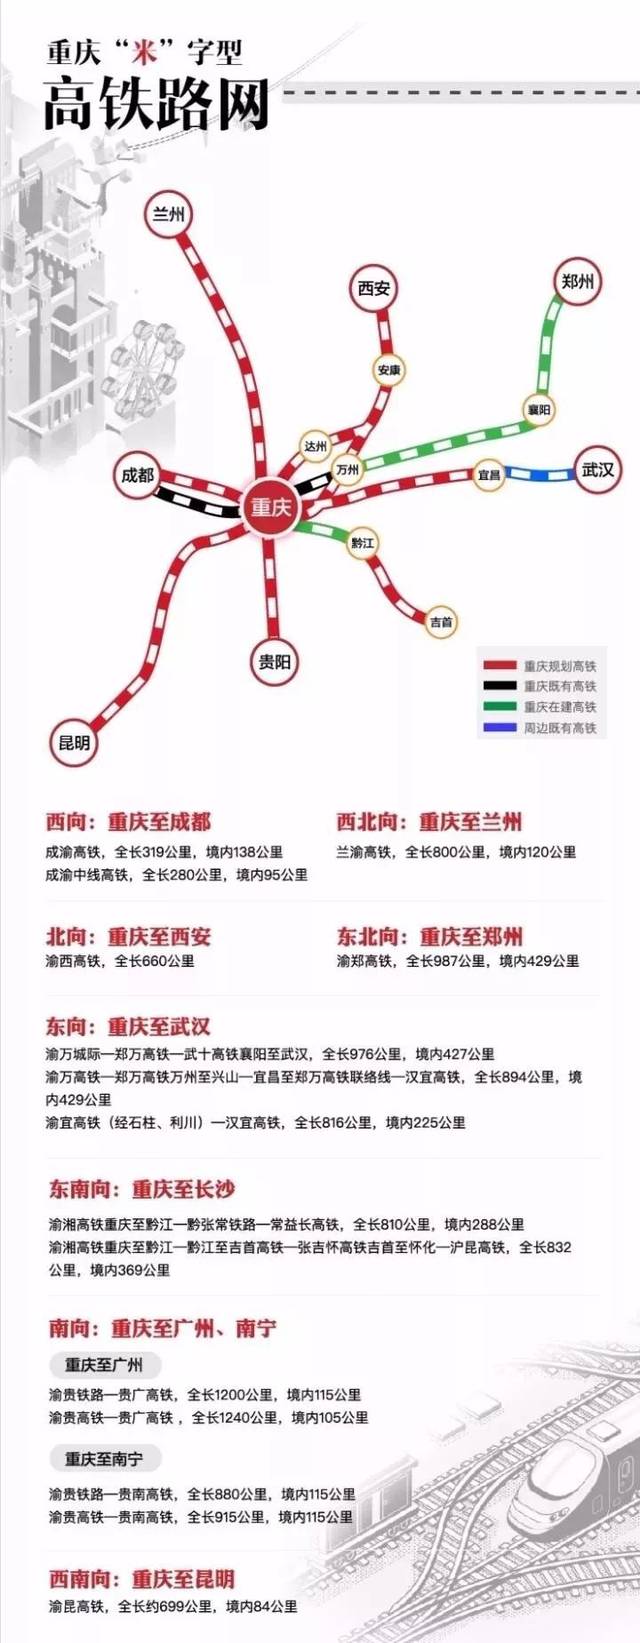 重庆提速建设"米"字型高铁通道,8个方向建设10条高铁通道